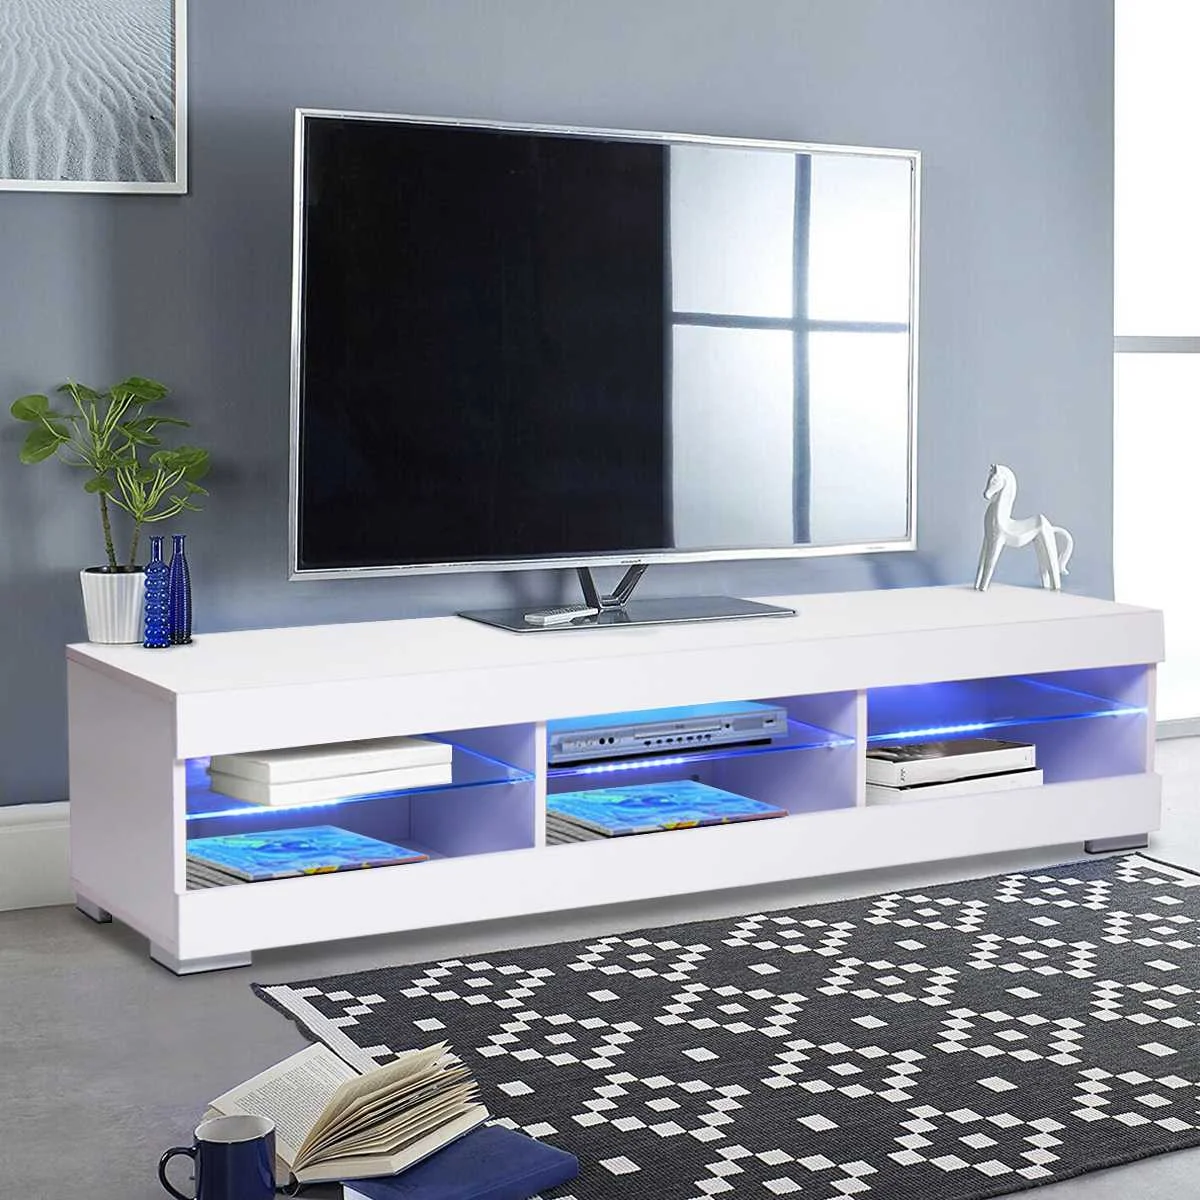 S Cabinet Living Room Furniture Television Bracket